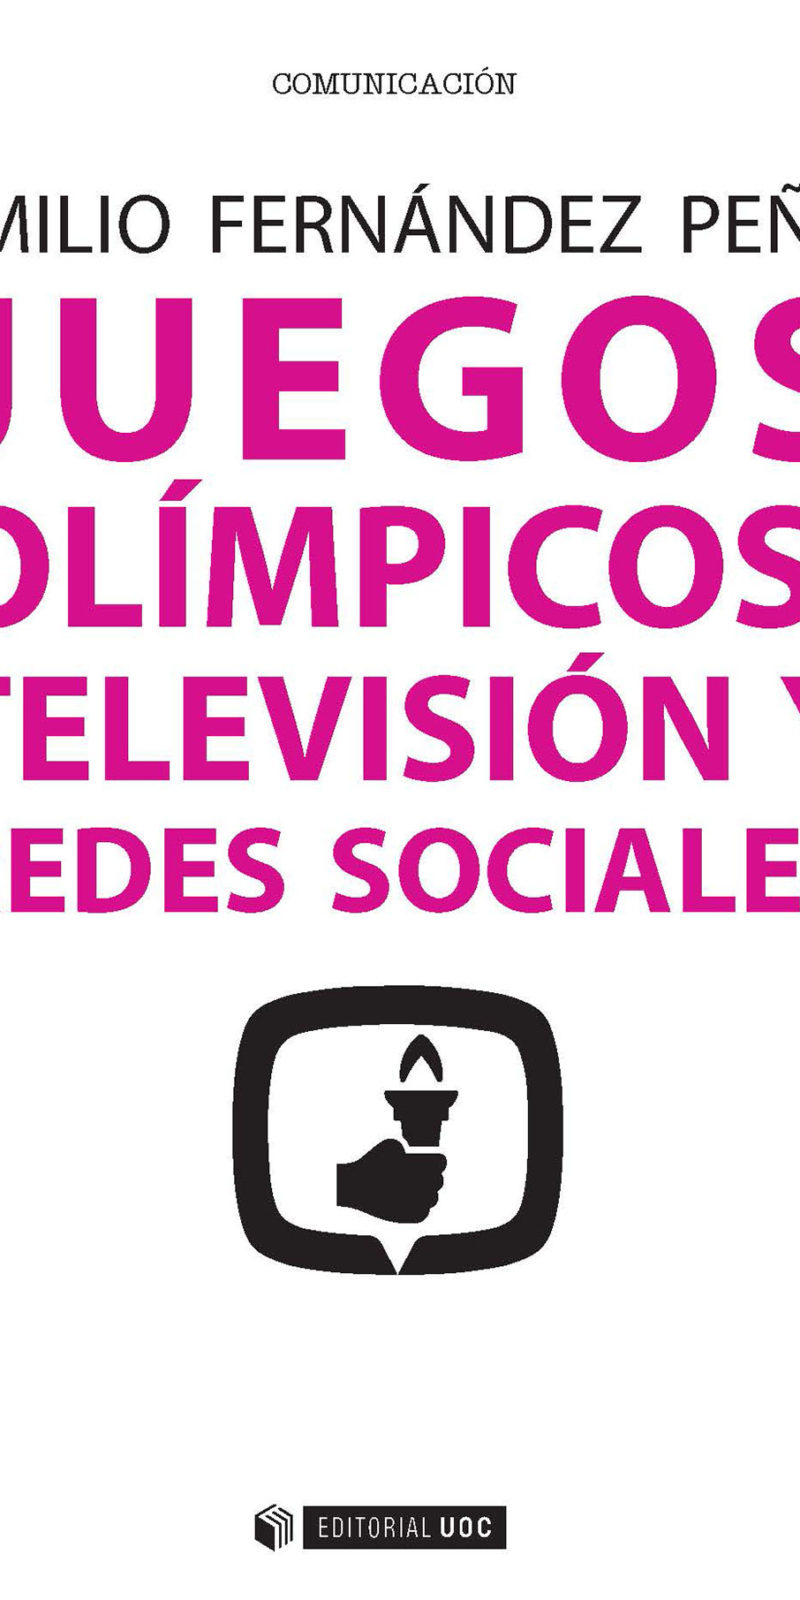 JUEGOS OLÍMPICOS TELEVISIÓN Y REDES SOCIALES